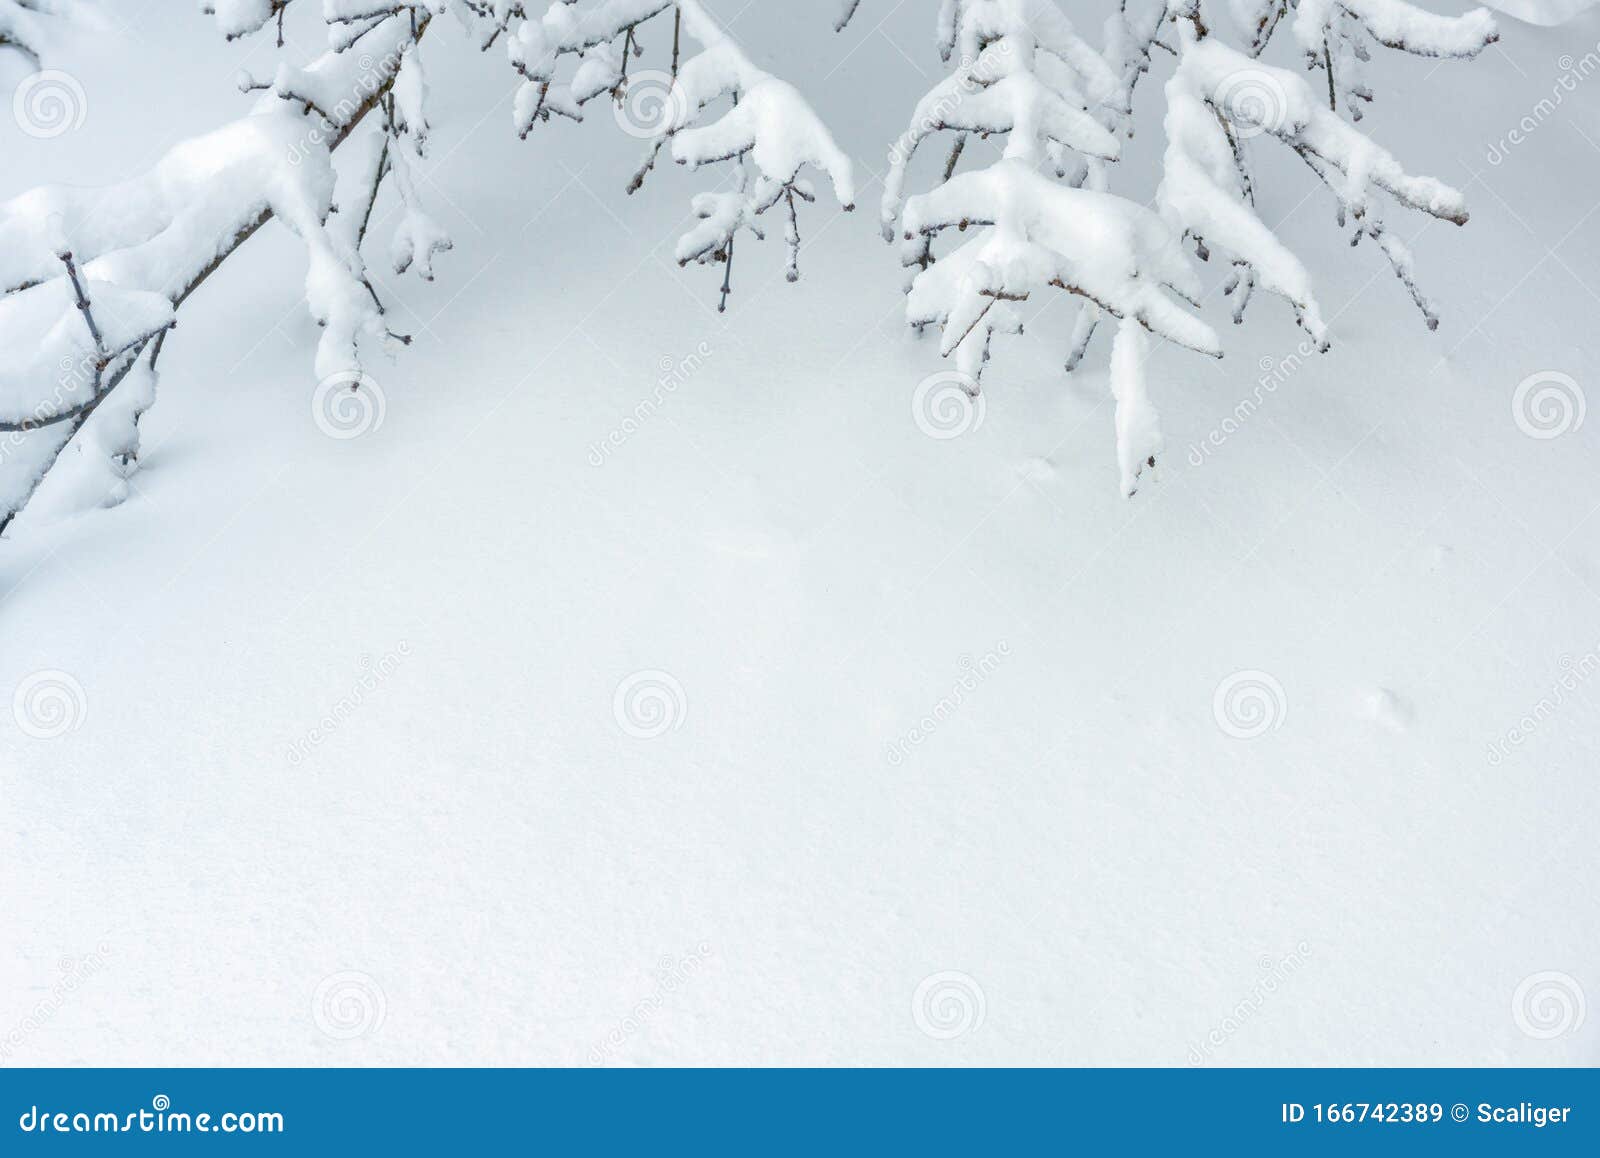 Mặt nền tuyết trắng như những đóa tuyết lấp lánh, chính là nguồn cảm hứng vô tận dành cho những người yêu nhiếp ảnh. Mỗi họa tiết hoa tuyết khác nhau, mời bạn đến khám phá sự độc đáo của từng bức ảnh.